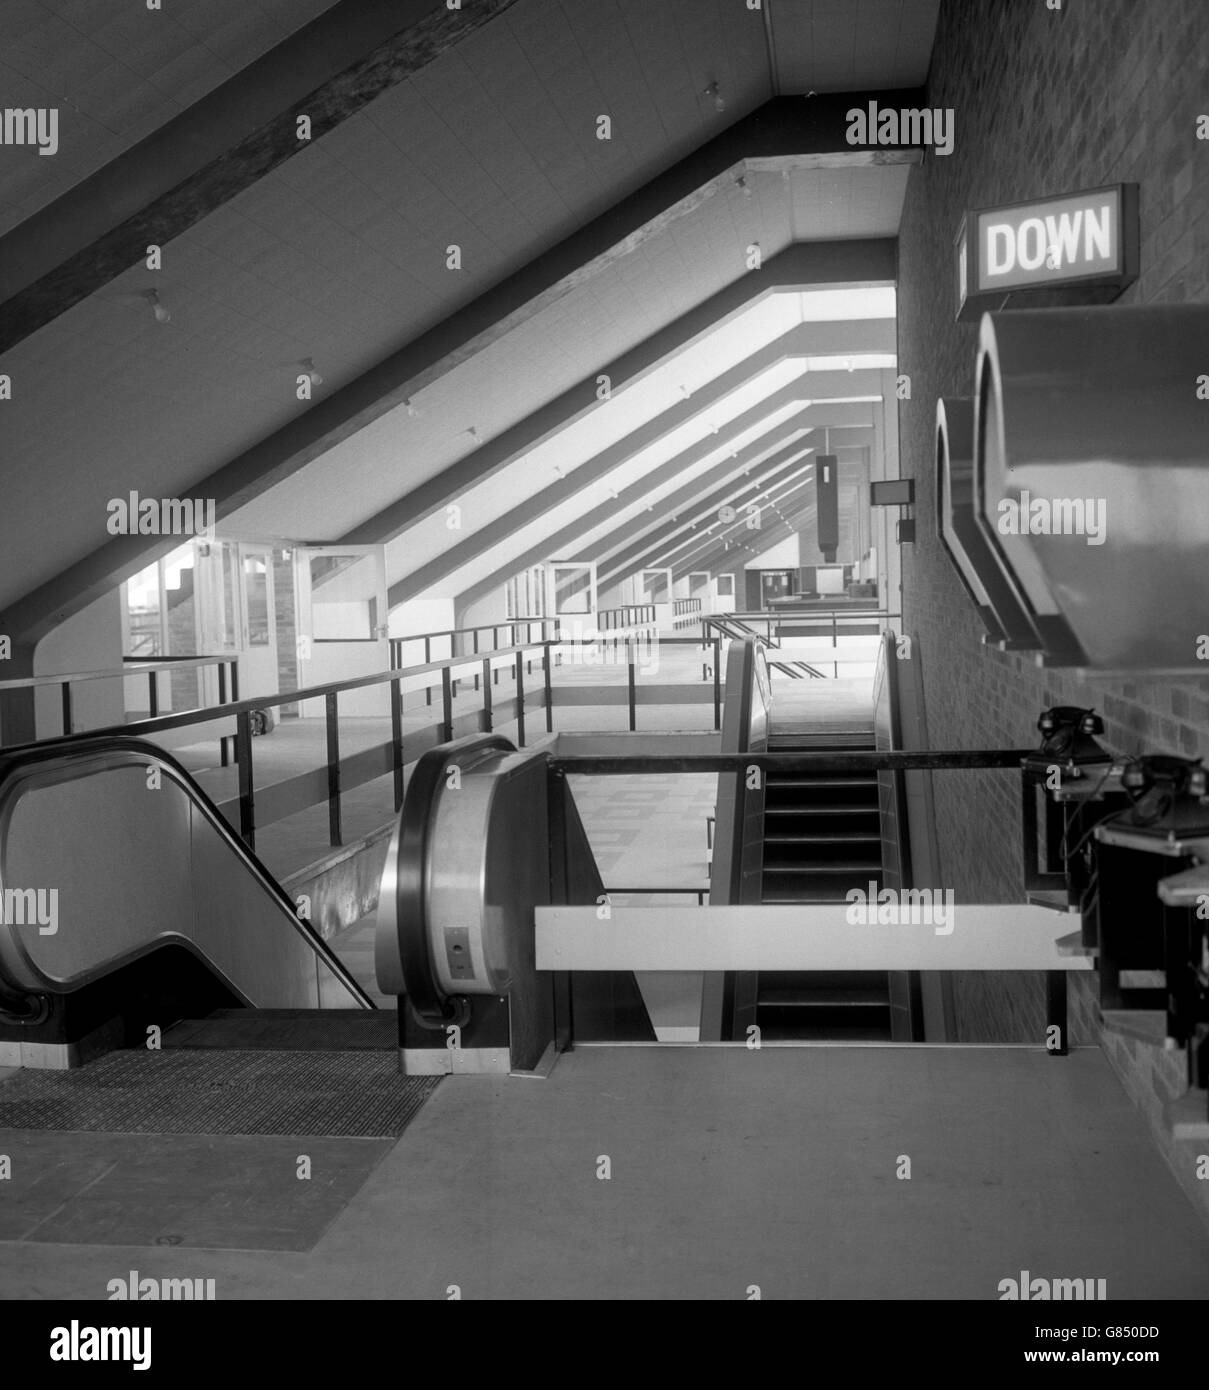 La passeggiata al quarto piano conduce al balcone panoramico superiore e mostra la scala mobile che collega i vari piani del nuovo Royal enclosure Stand presso l'ippodromo di Ascot, Berkshire. Foto Stock